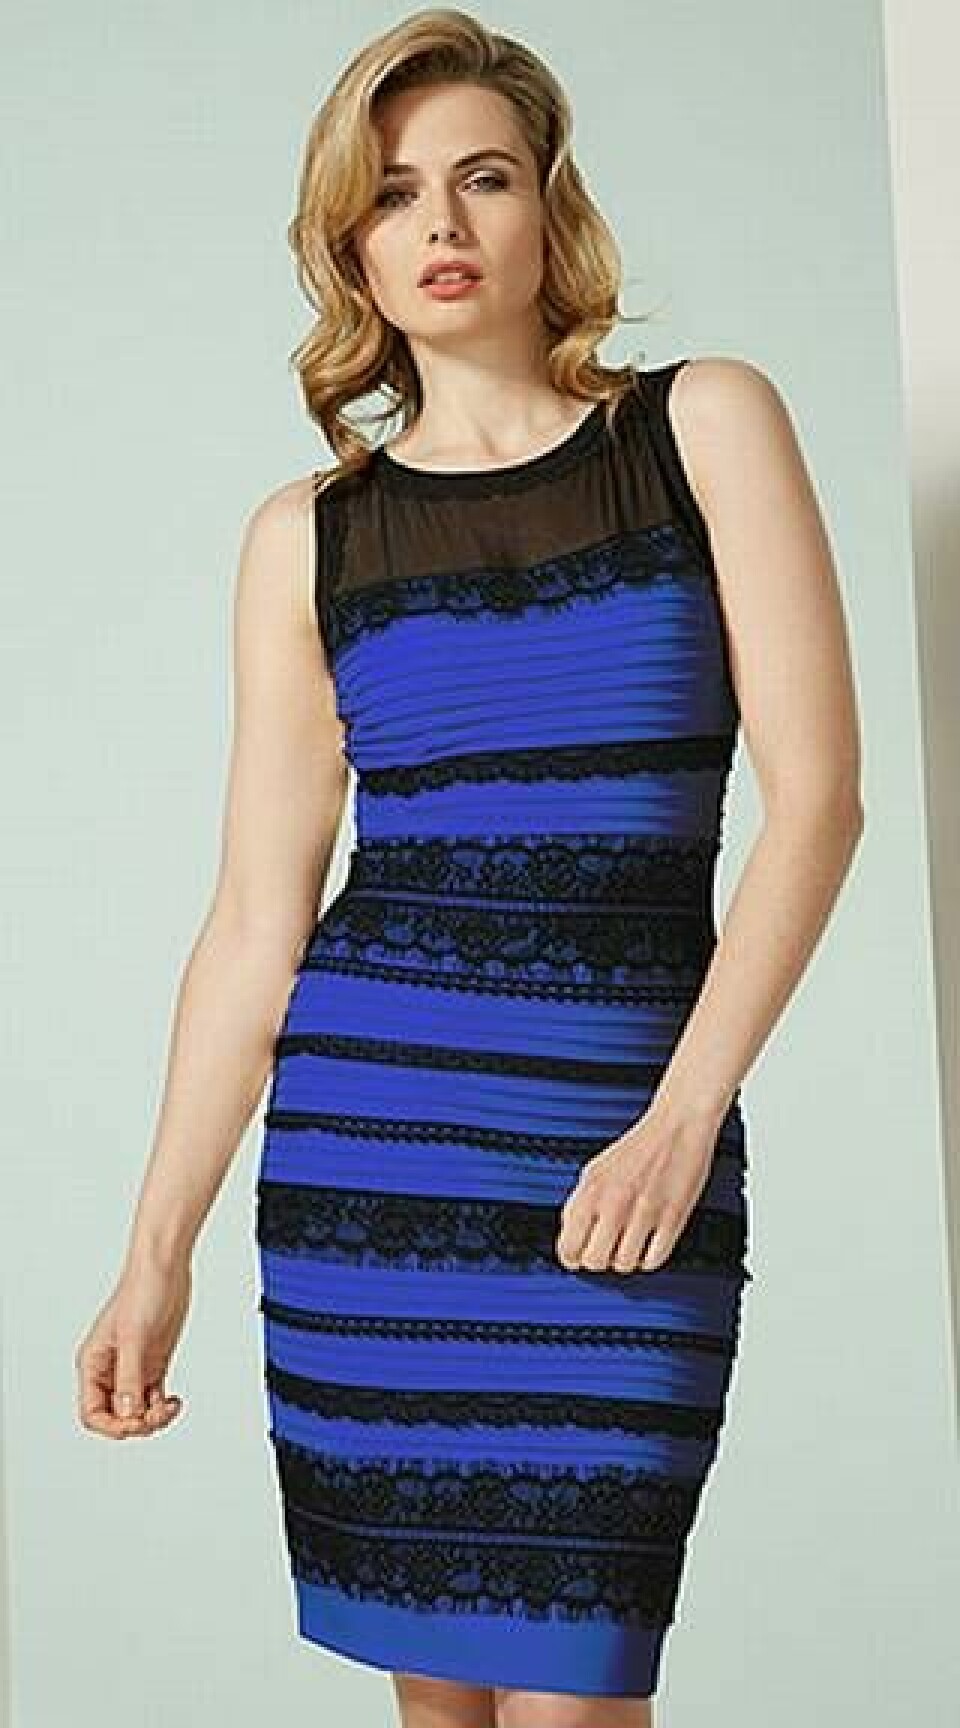 En blå och svart klänning har orsakat storm på sociala medier. För den är blå... Foto: TT